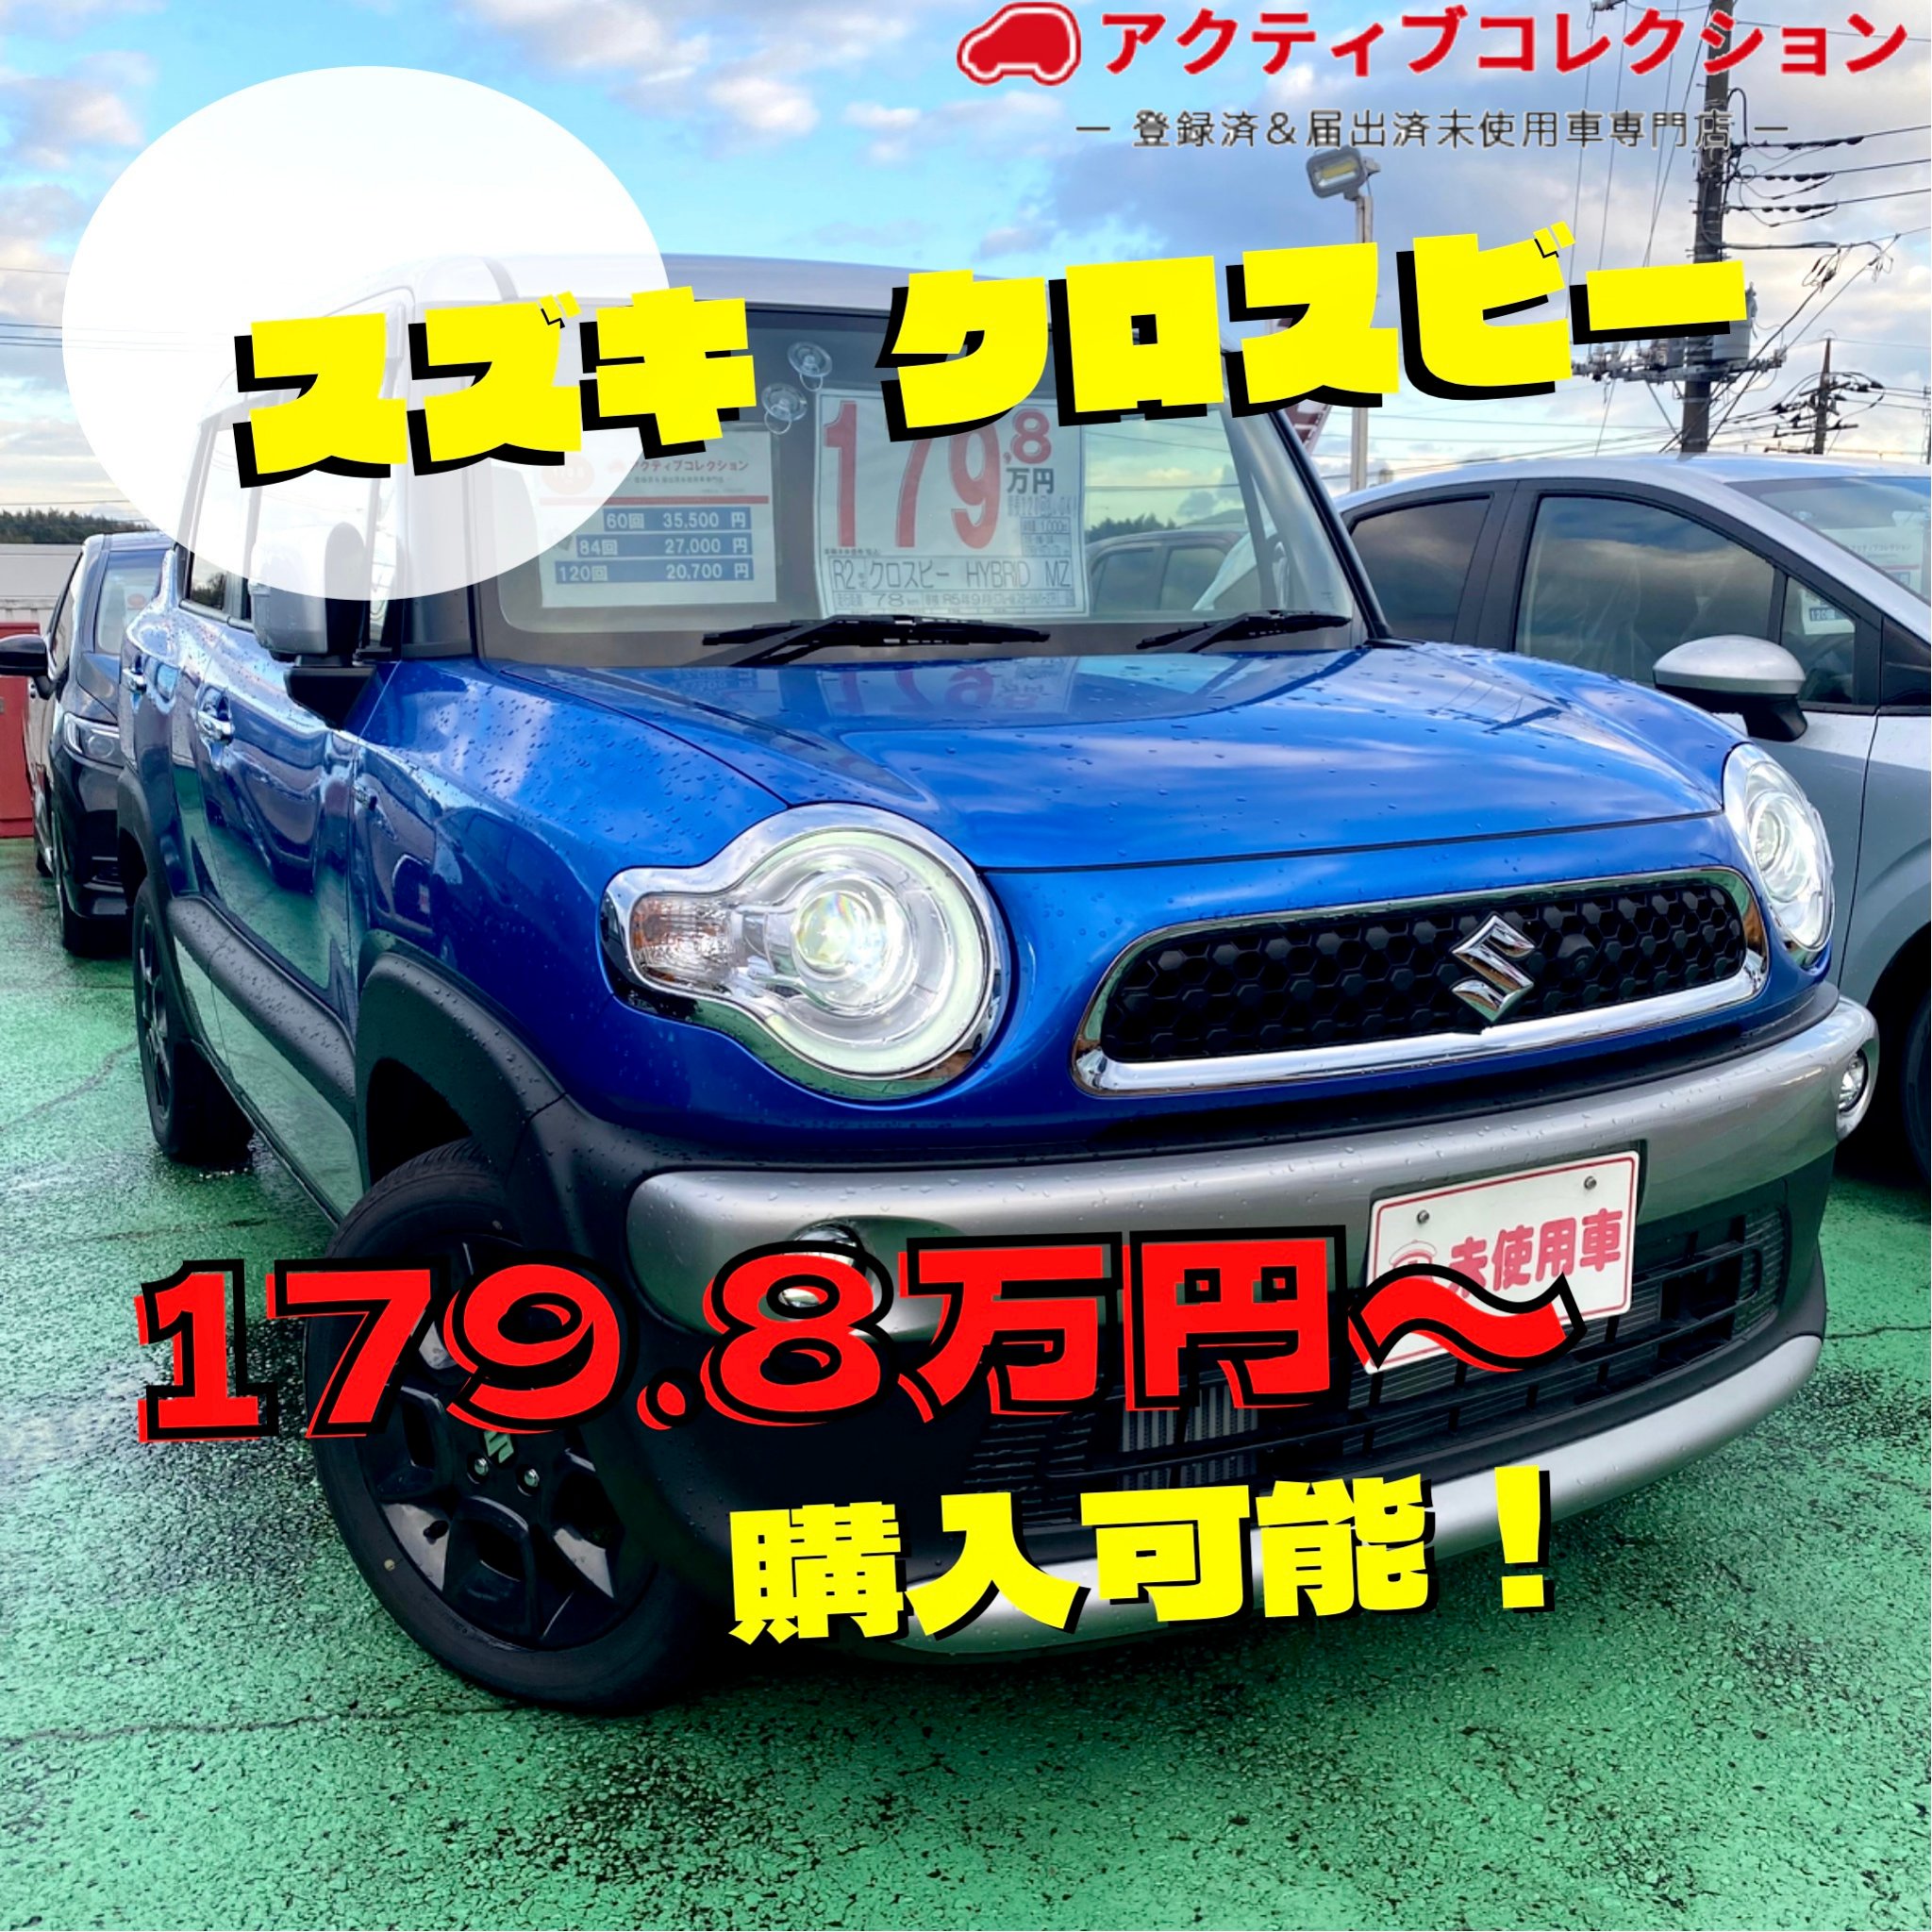 アクティブコレクション 横浜で未使用車69 8万円 Activecolle C Twitter